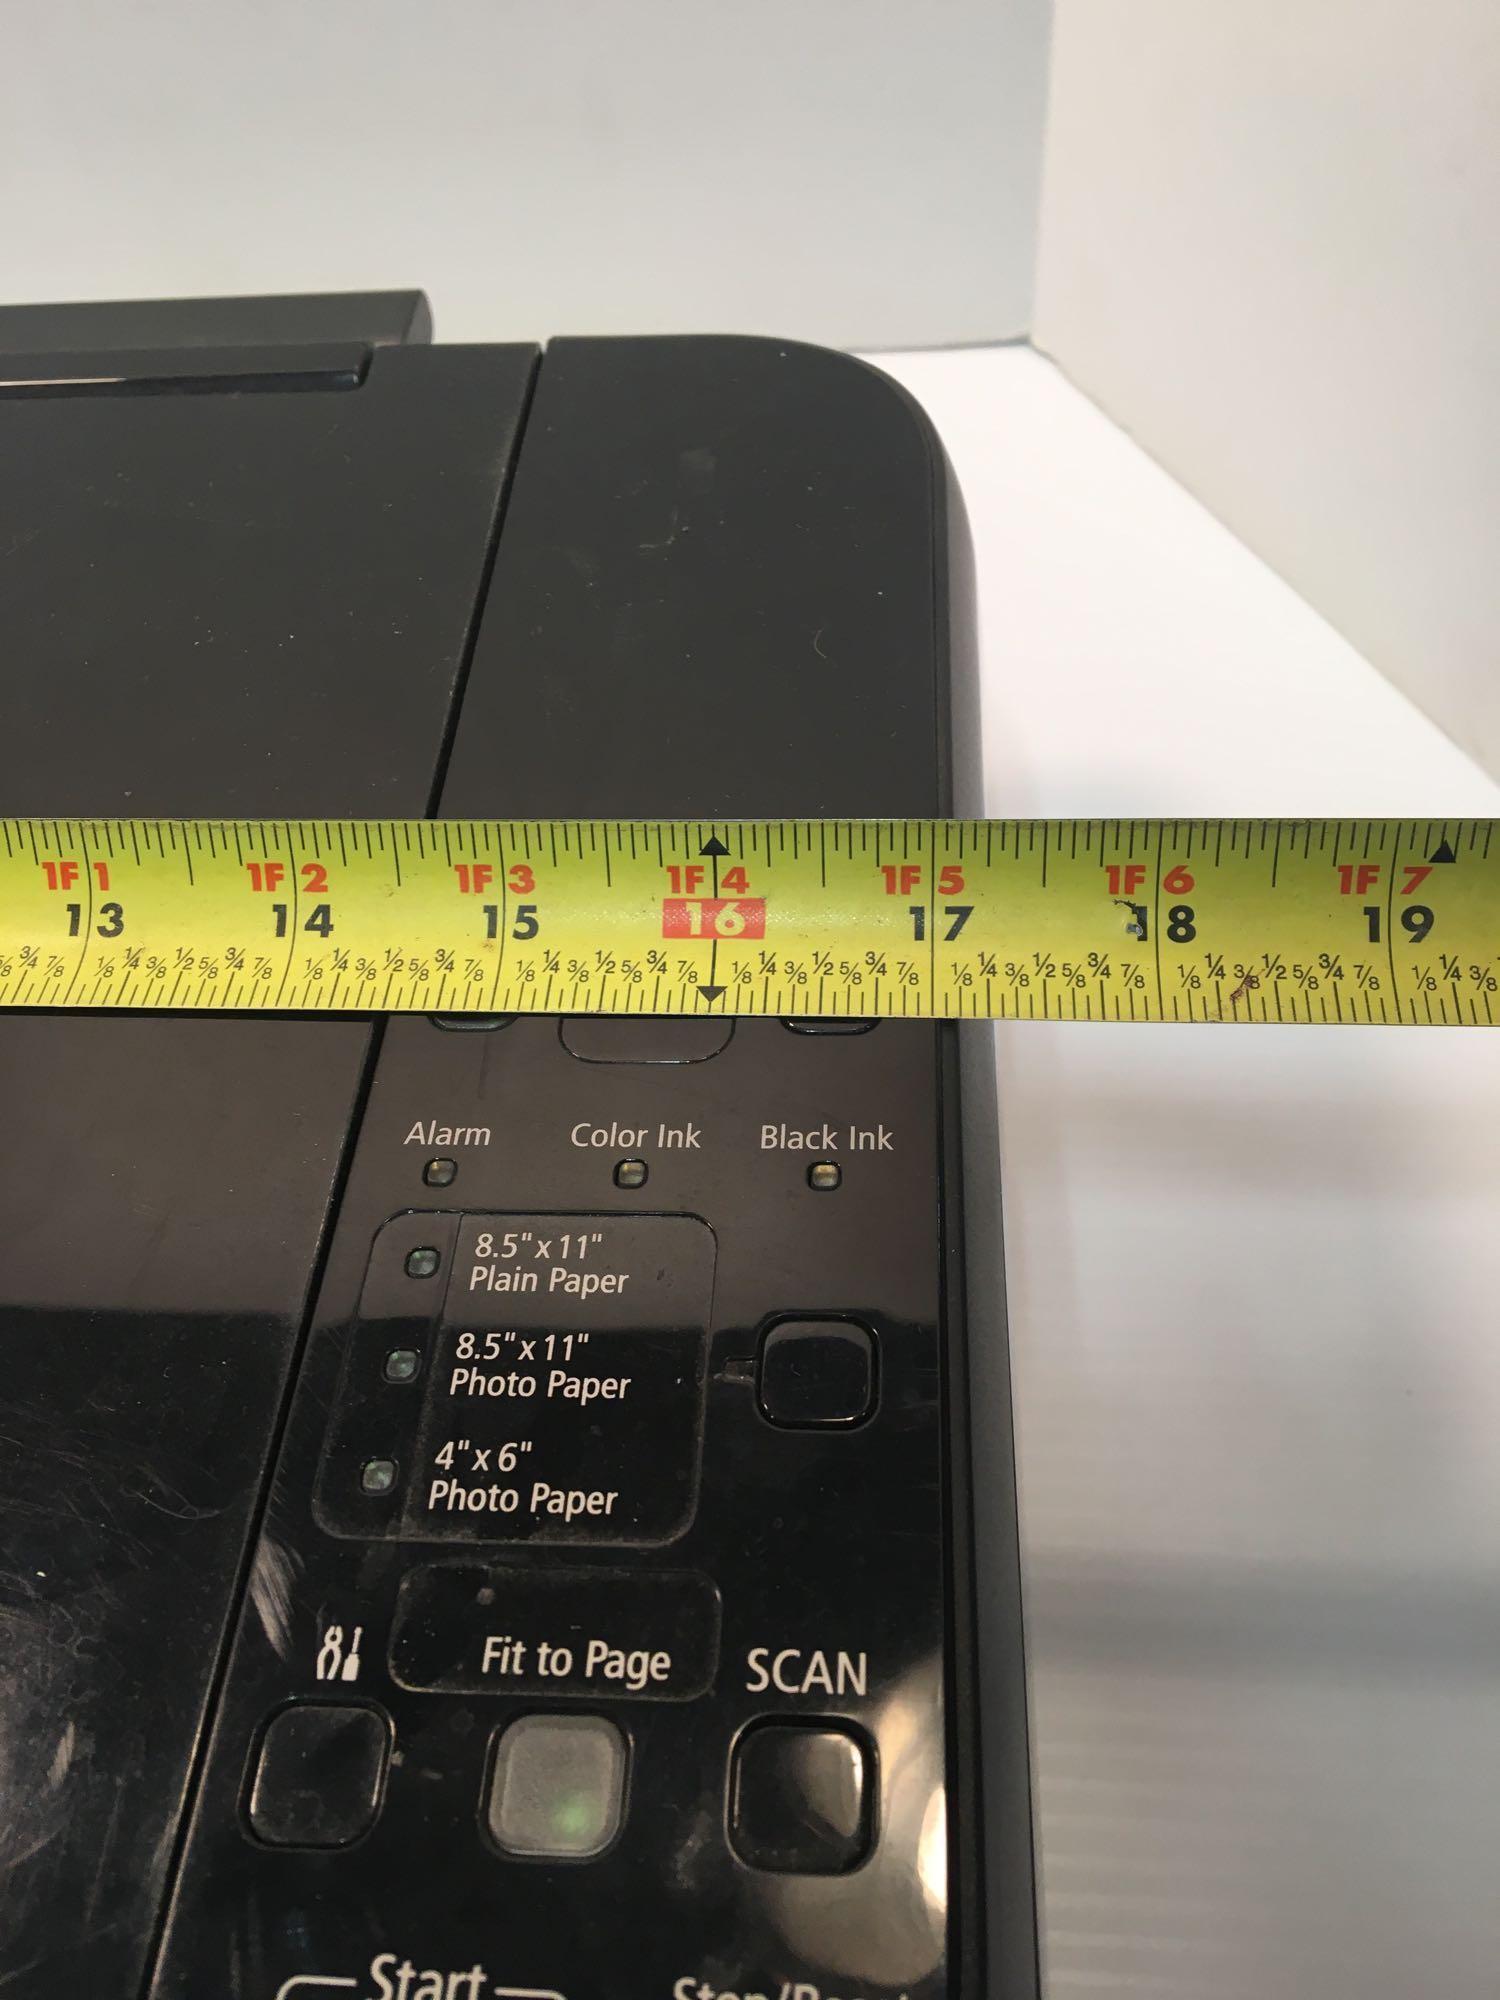 CANON PIXMA multifunction printer(MP495)